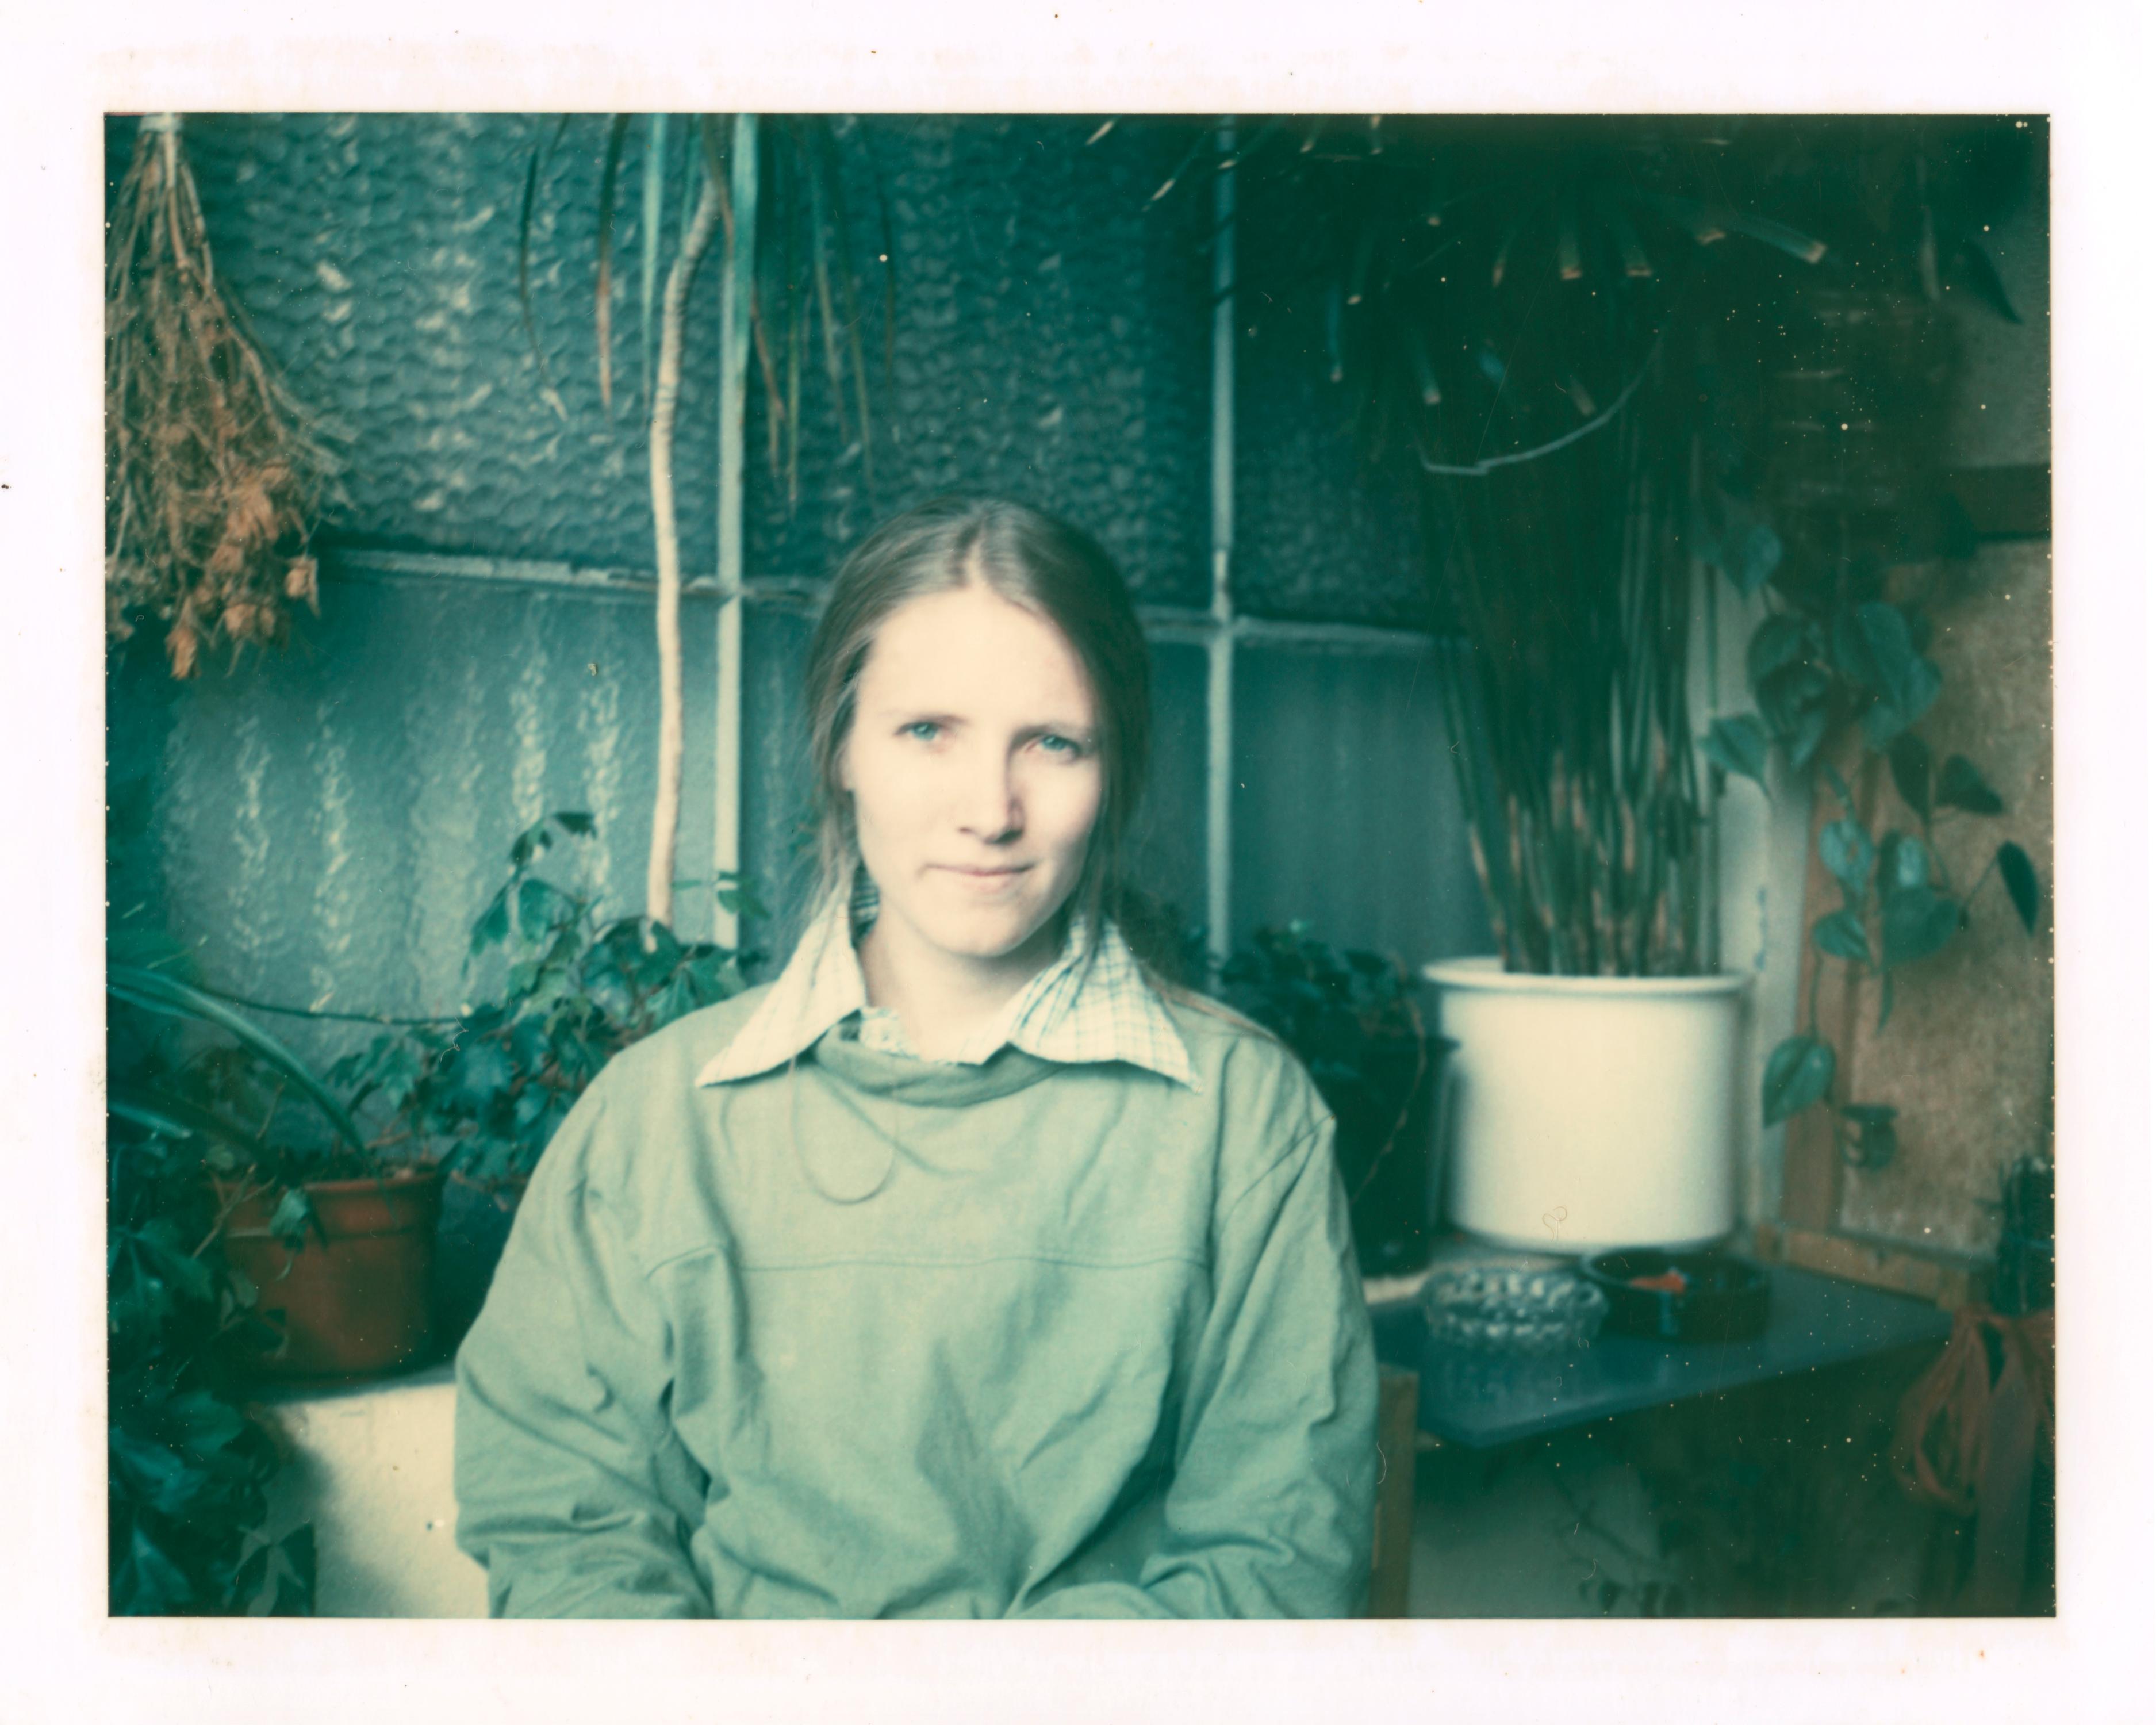 Portrait Photograph Stefanie Schneider - Self-Portrait en vert, 1993